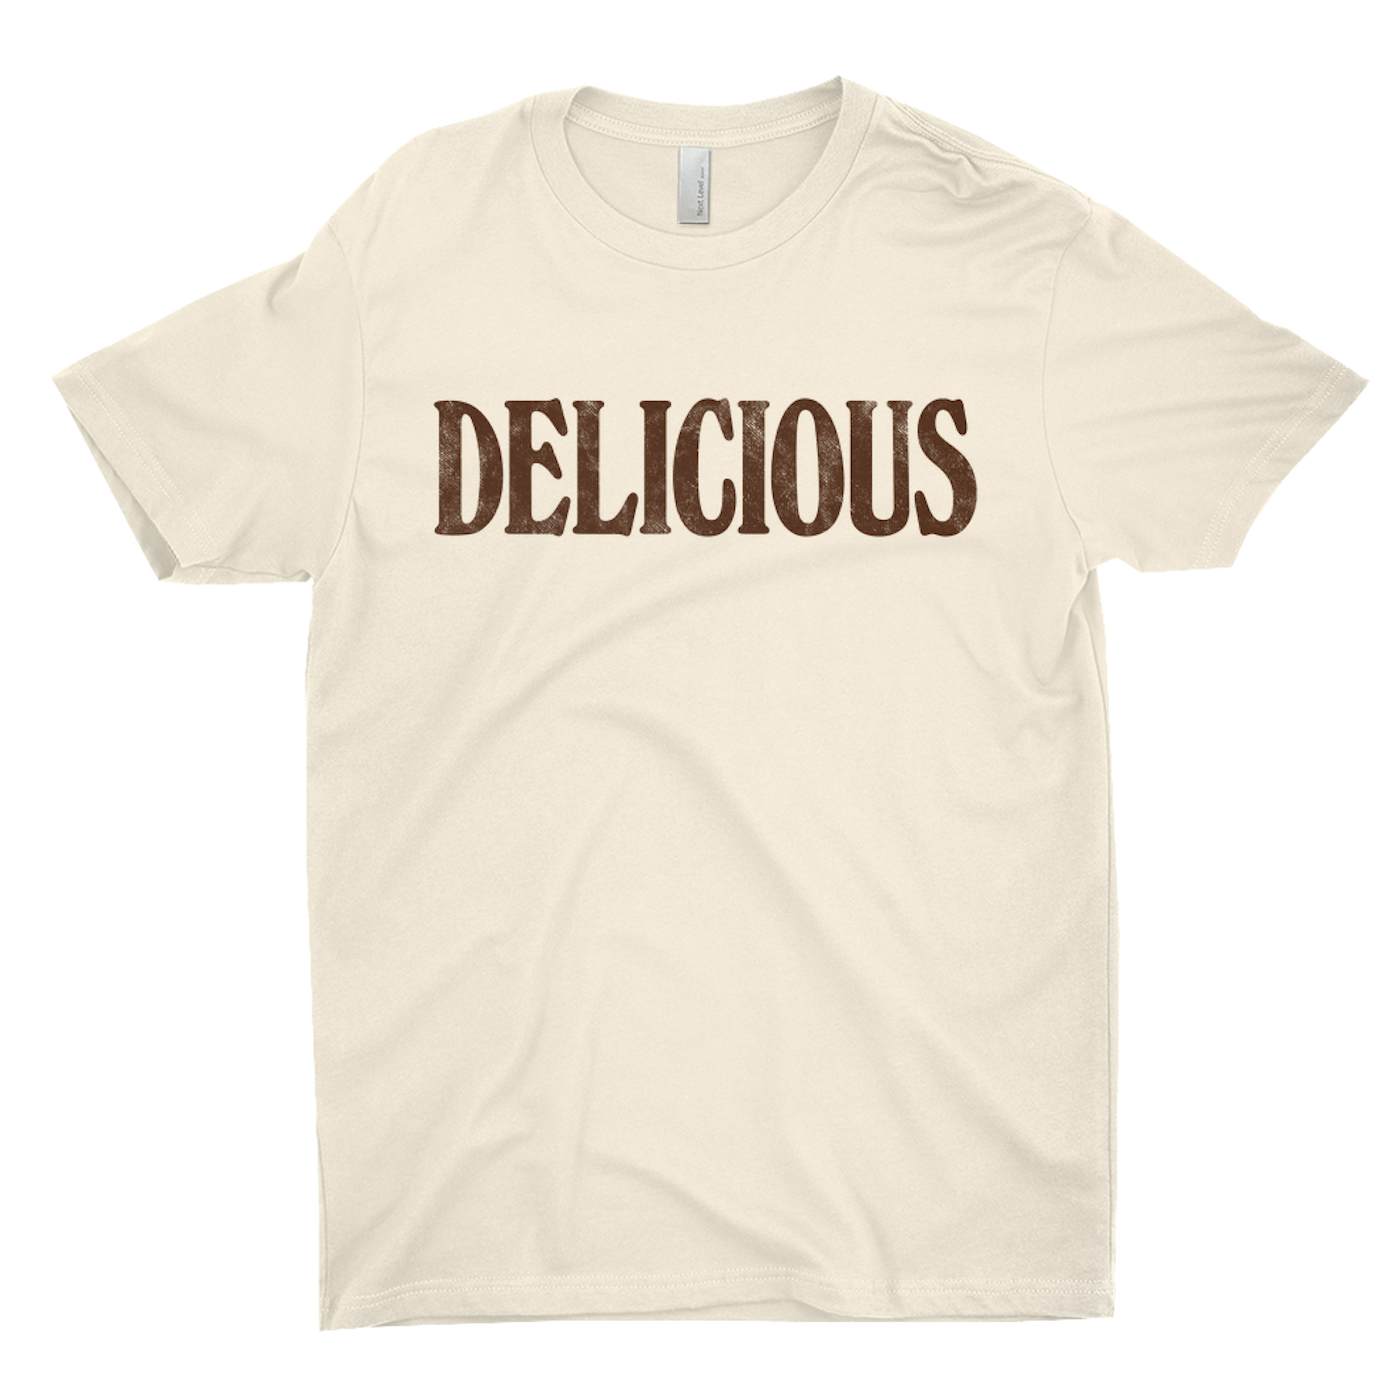 The Beach Boys T-Shirt | Delicious Worn By Brian Wilson The Beach Boys Shirt